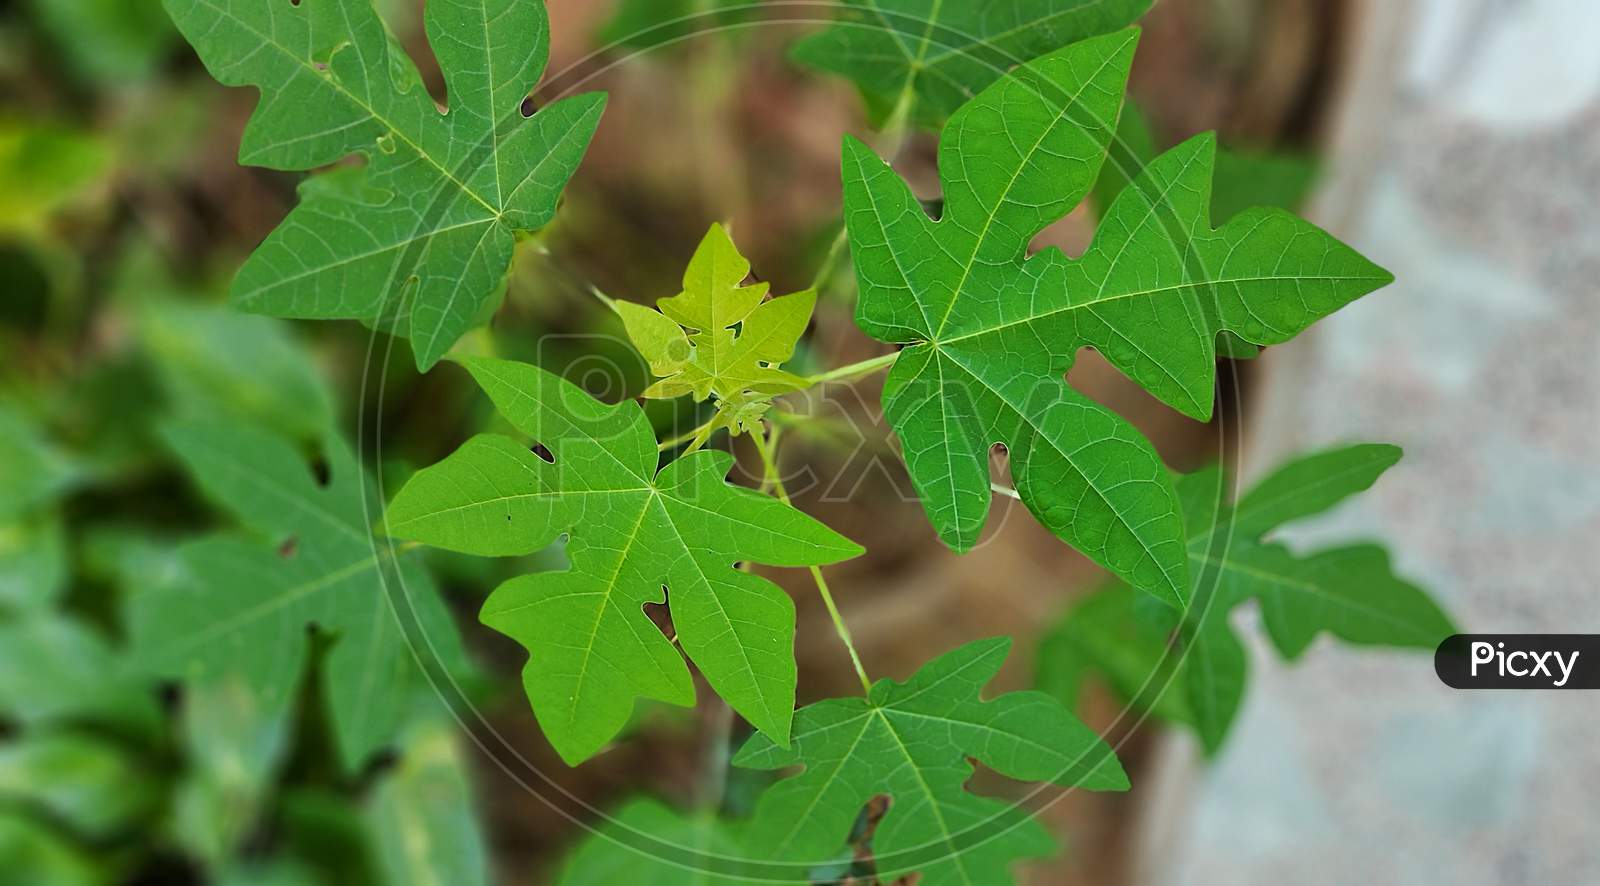 Papaya leaf